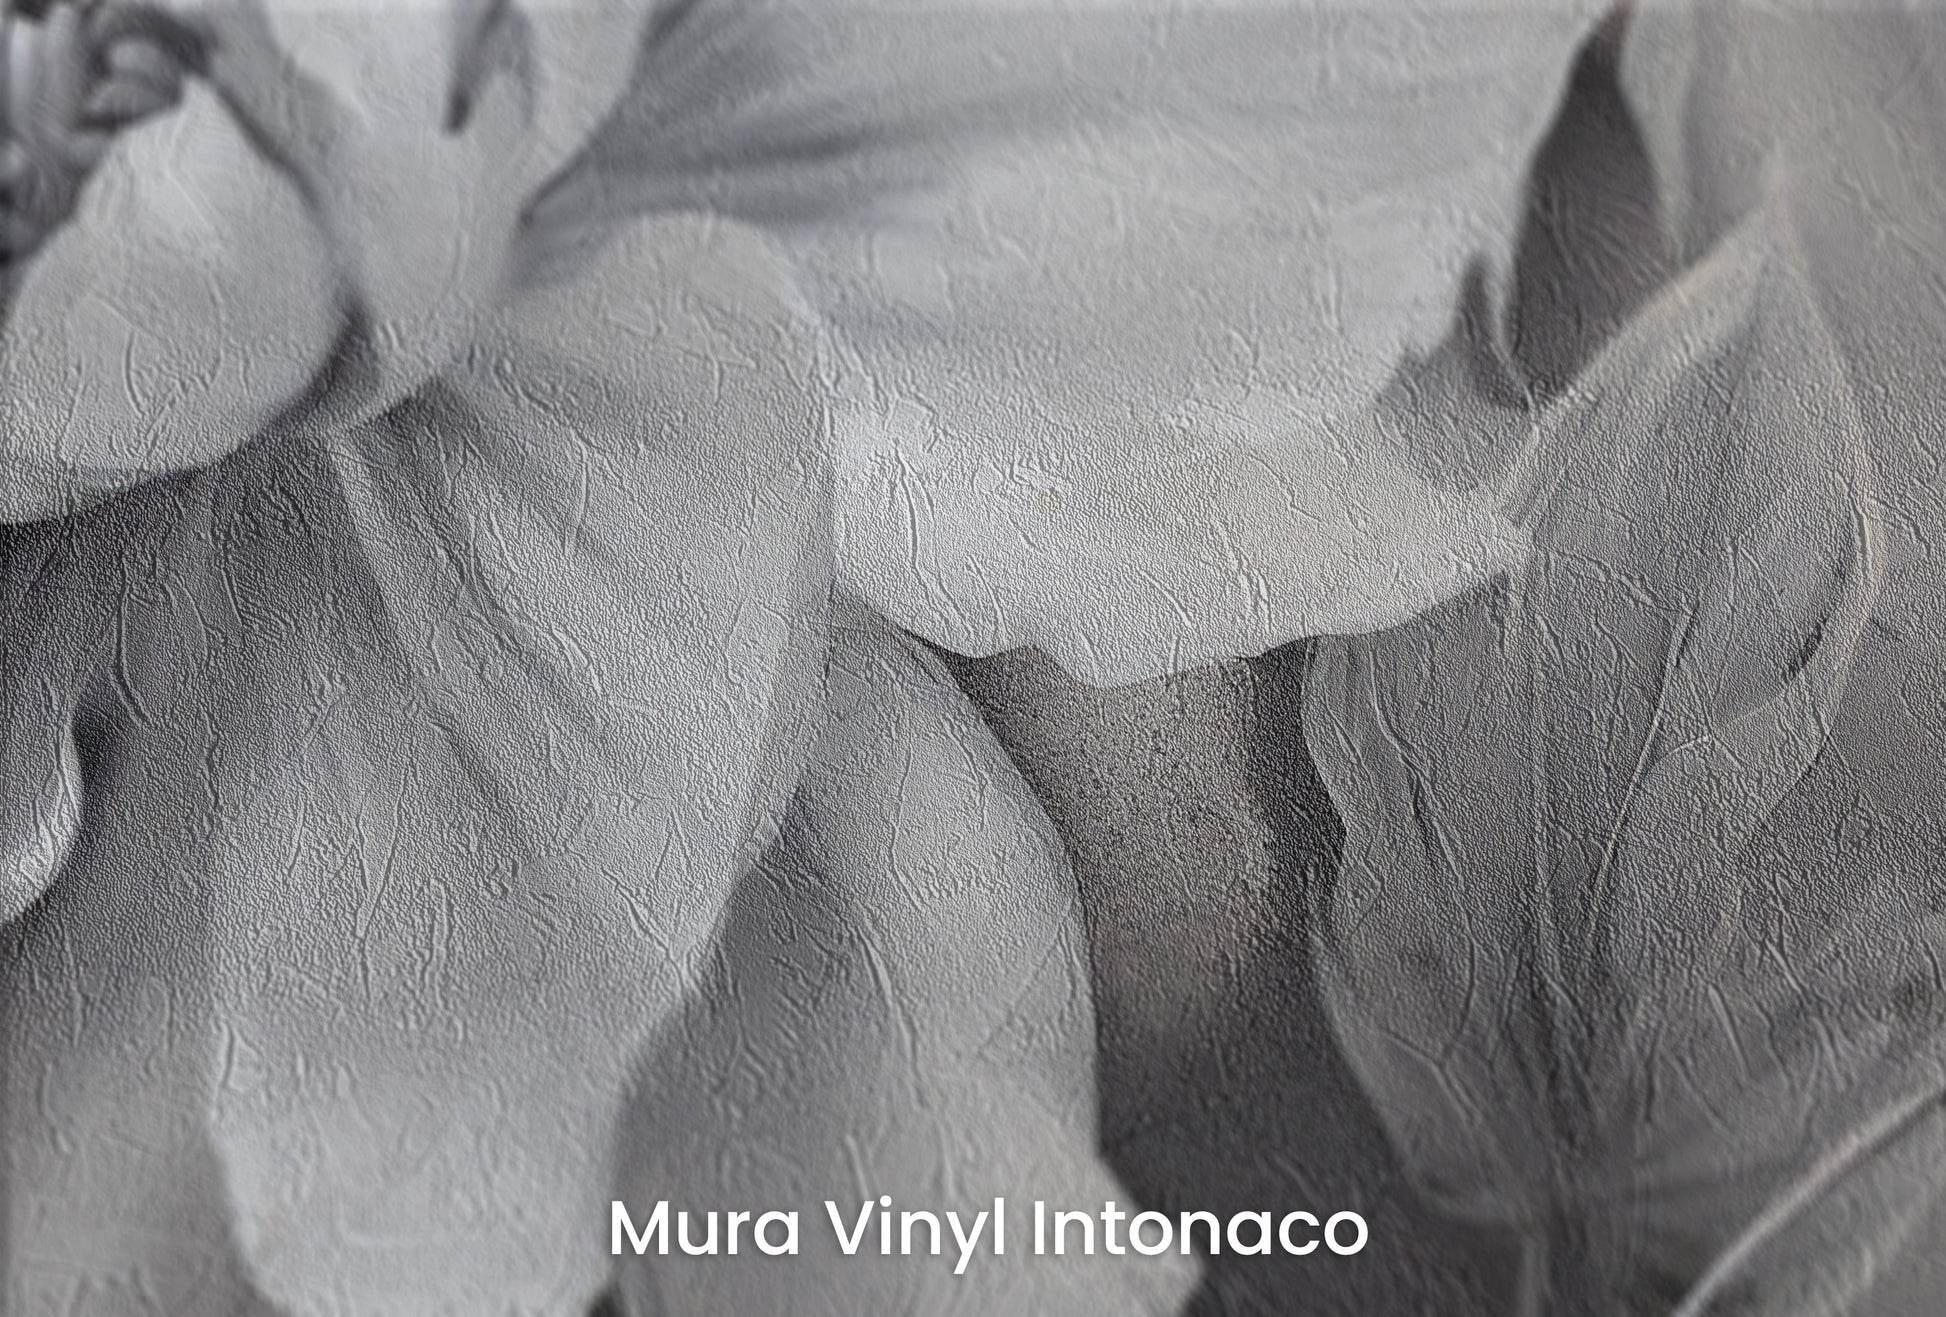 Zbliżenie na artystyczną fototapetę o nazwie NOCTURNAL FLORAL WHISPERS na podłożu Mura Vinyl Intonaco - struktura tartego tynku.